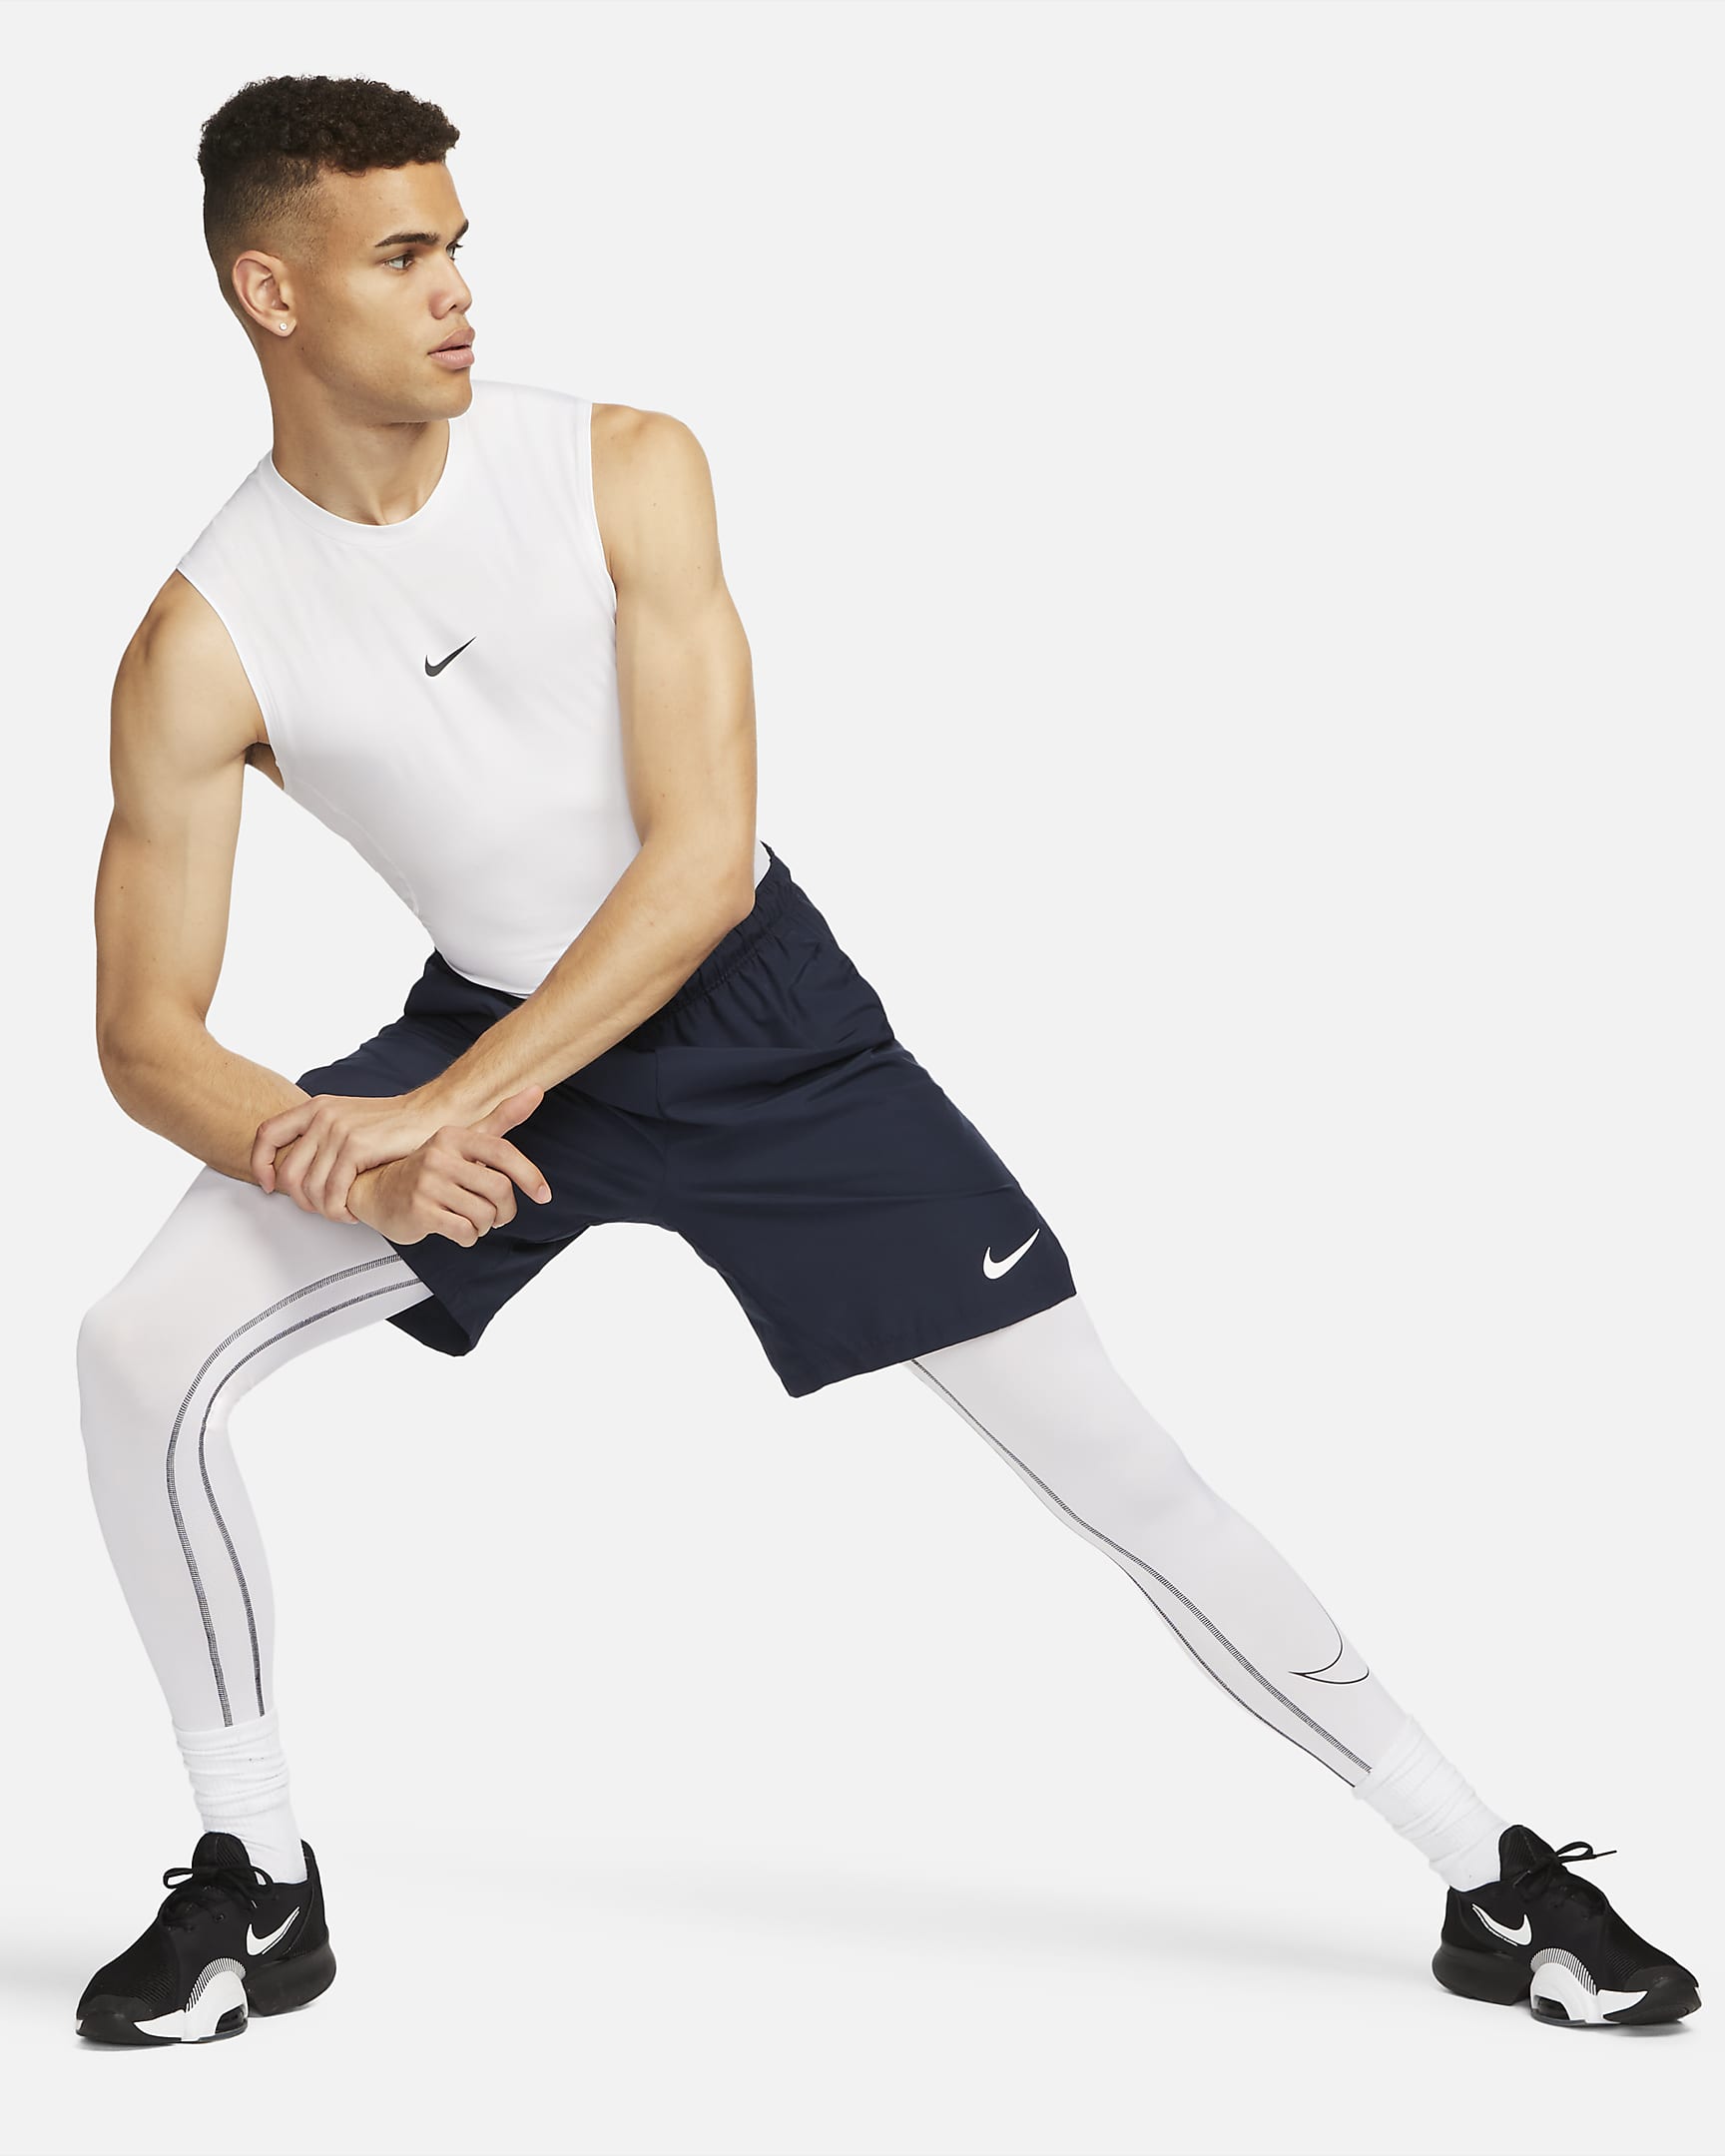 Nike Pro Camiseta de entrenamiento sin mangas y ceñida Dri-FIT - Hombre - Blanco/Negro